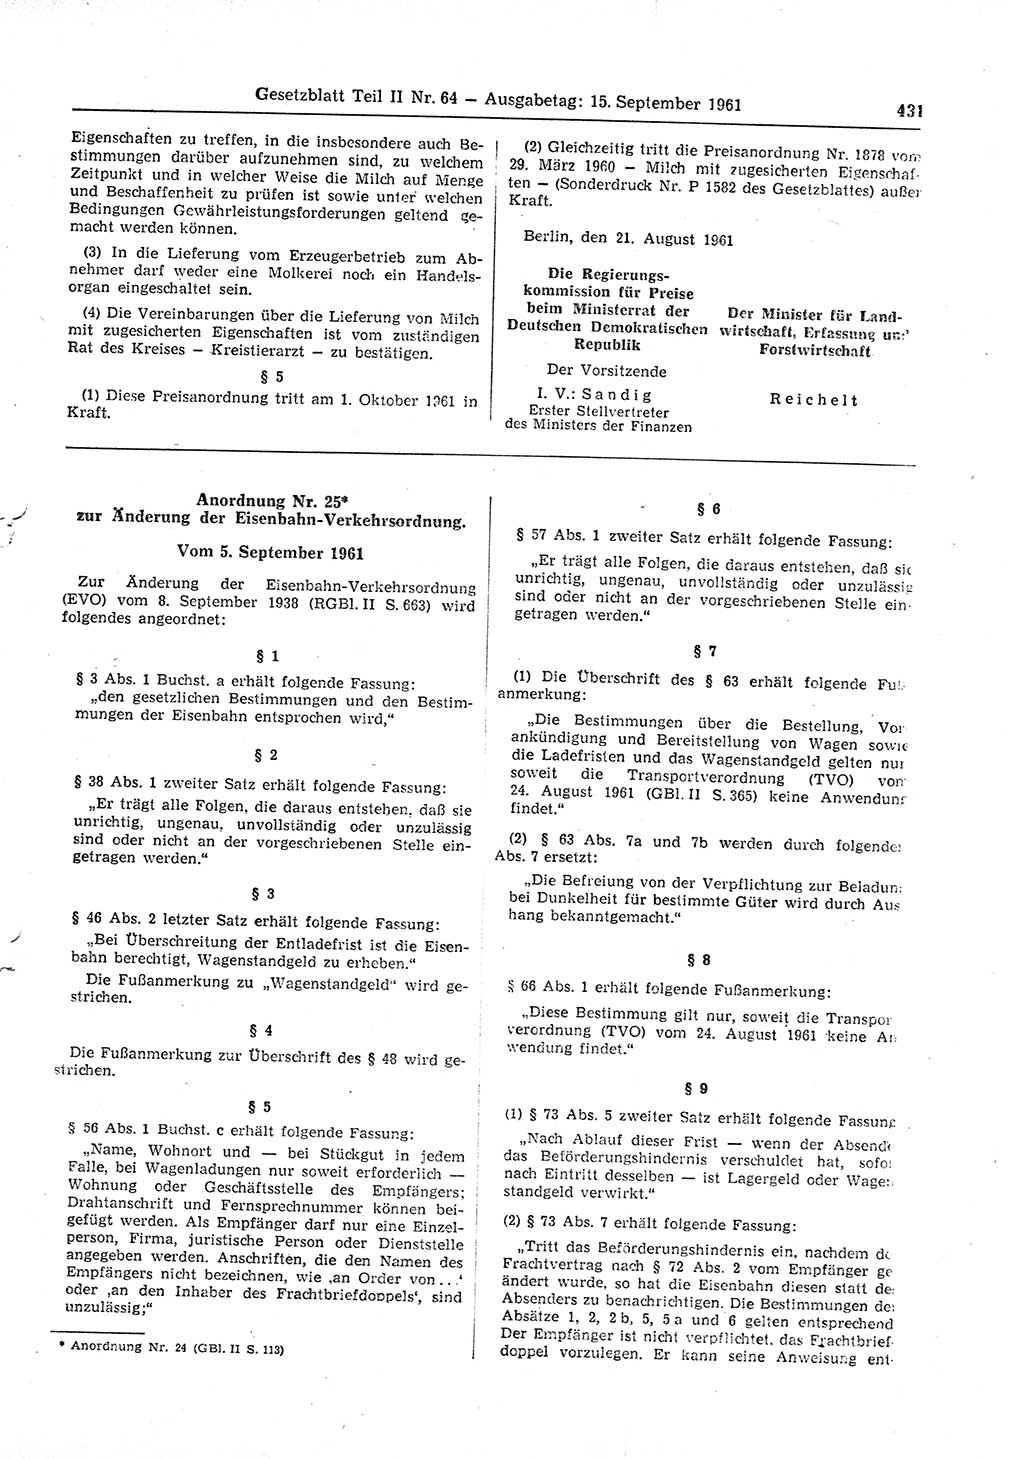 Gesetzblatt (GBl.) der Deutschen Demokratischen Republik (DDR) Teil ⅠⅠ 1961, Seite 431 (GBl. DDR ⅠⅠ 1961, S. 431)